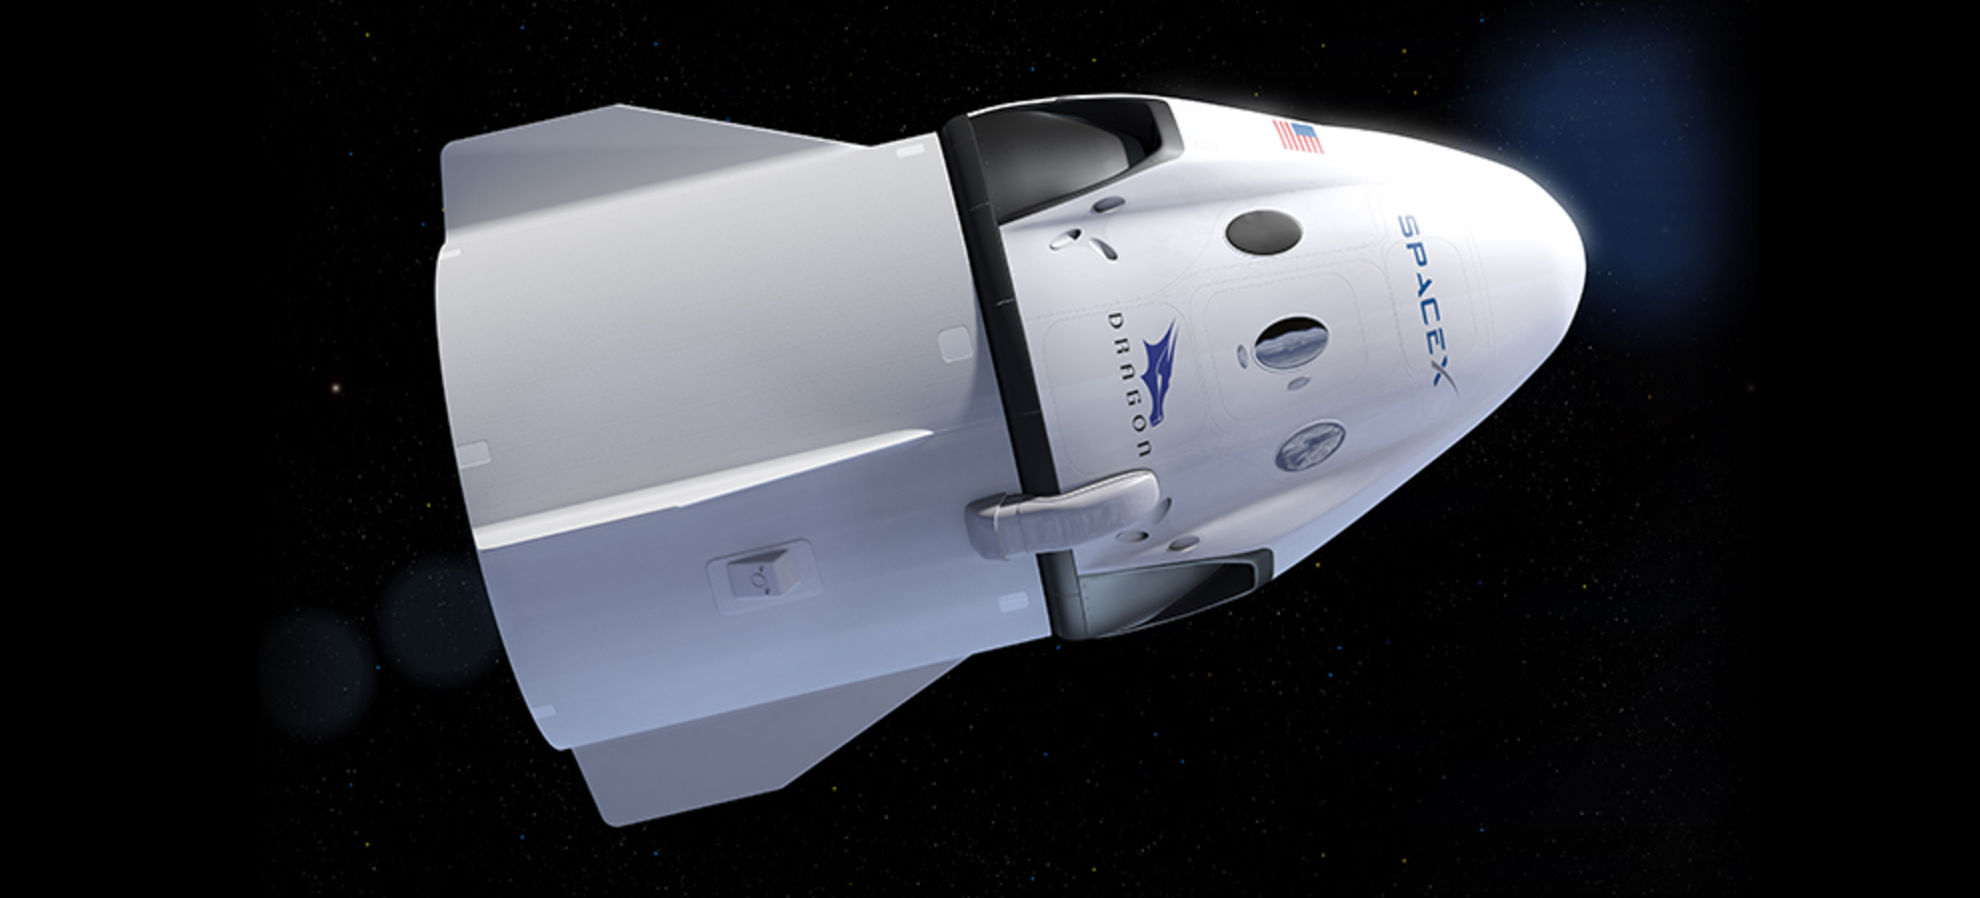 ستقوم SpaceX بأول رحلة مأهولة إلى محطة الفضاء الدولية في مايو 62